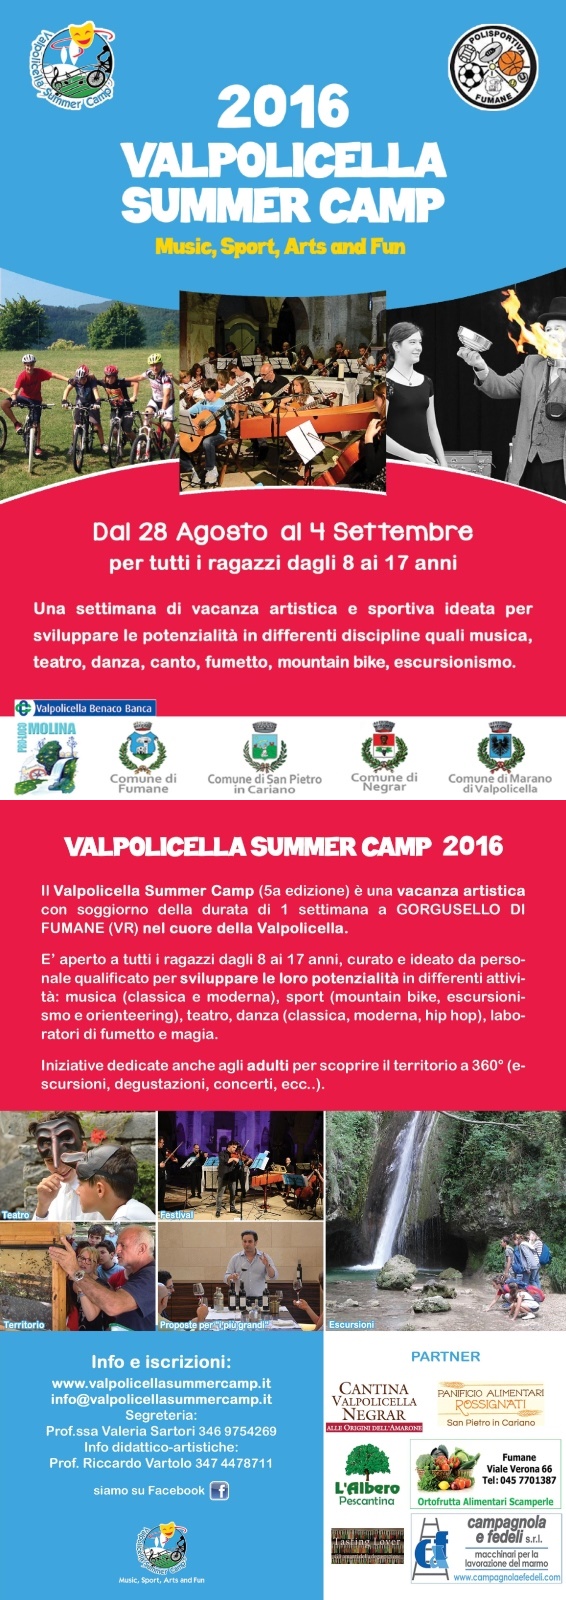 Valpolicella Summer Camp 2016